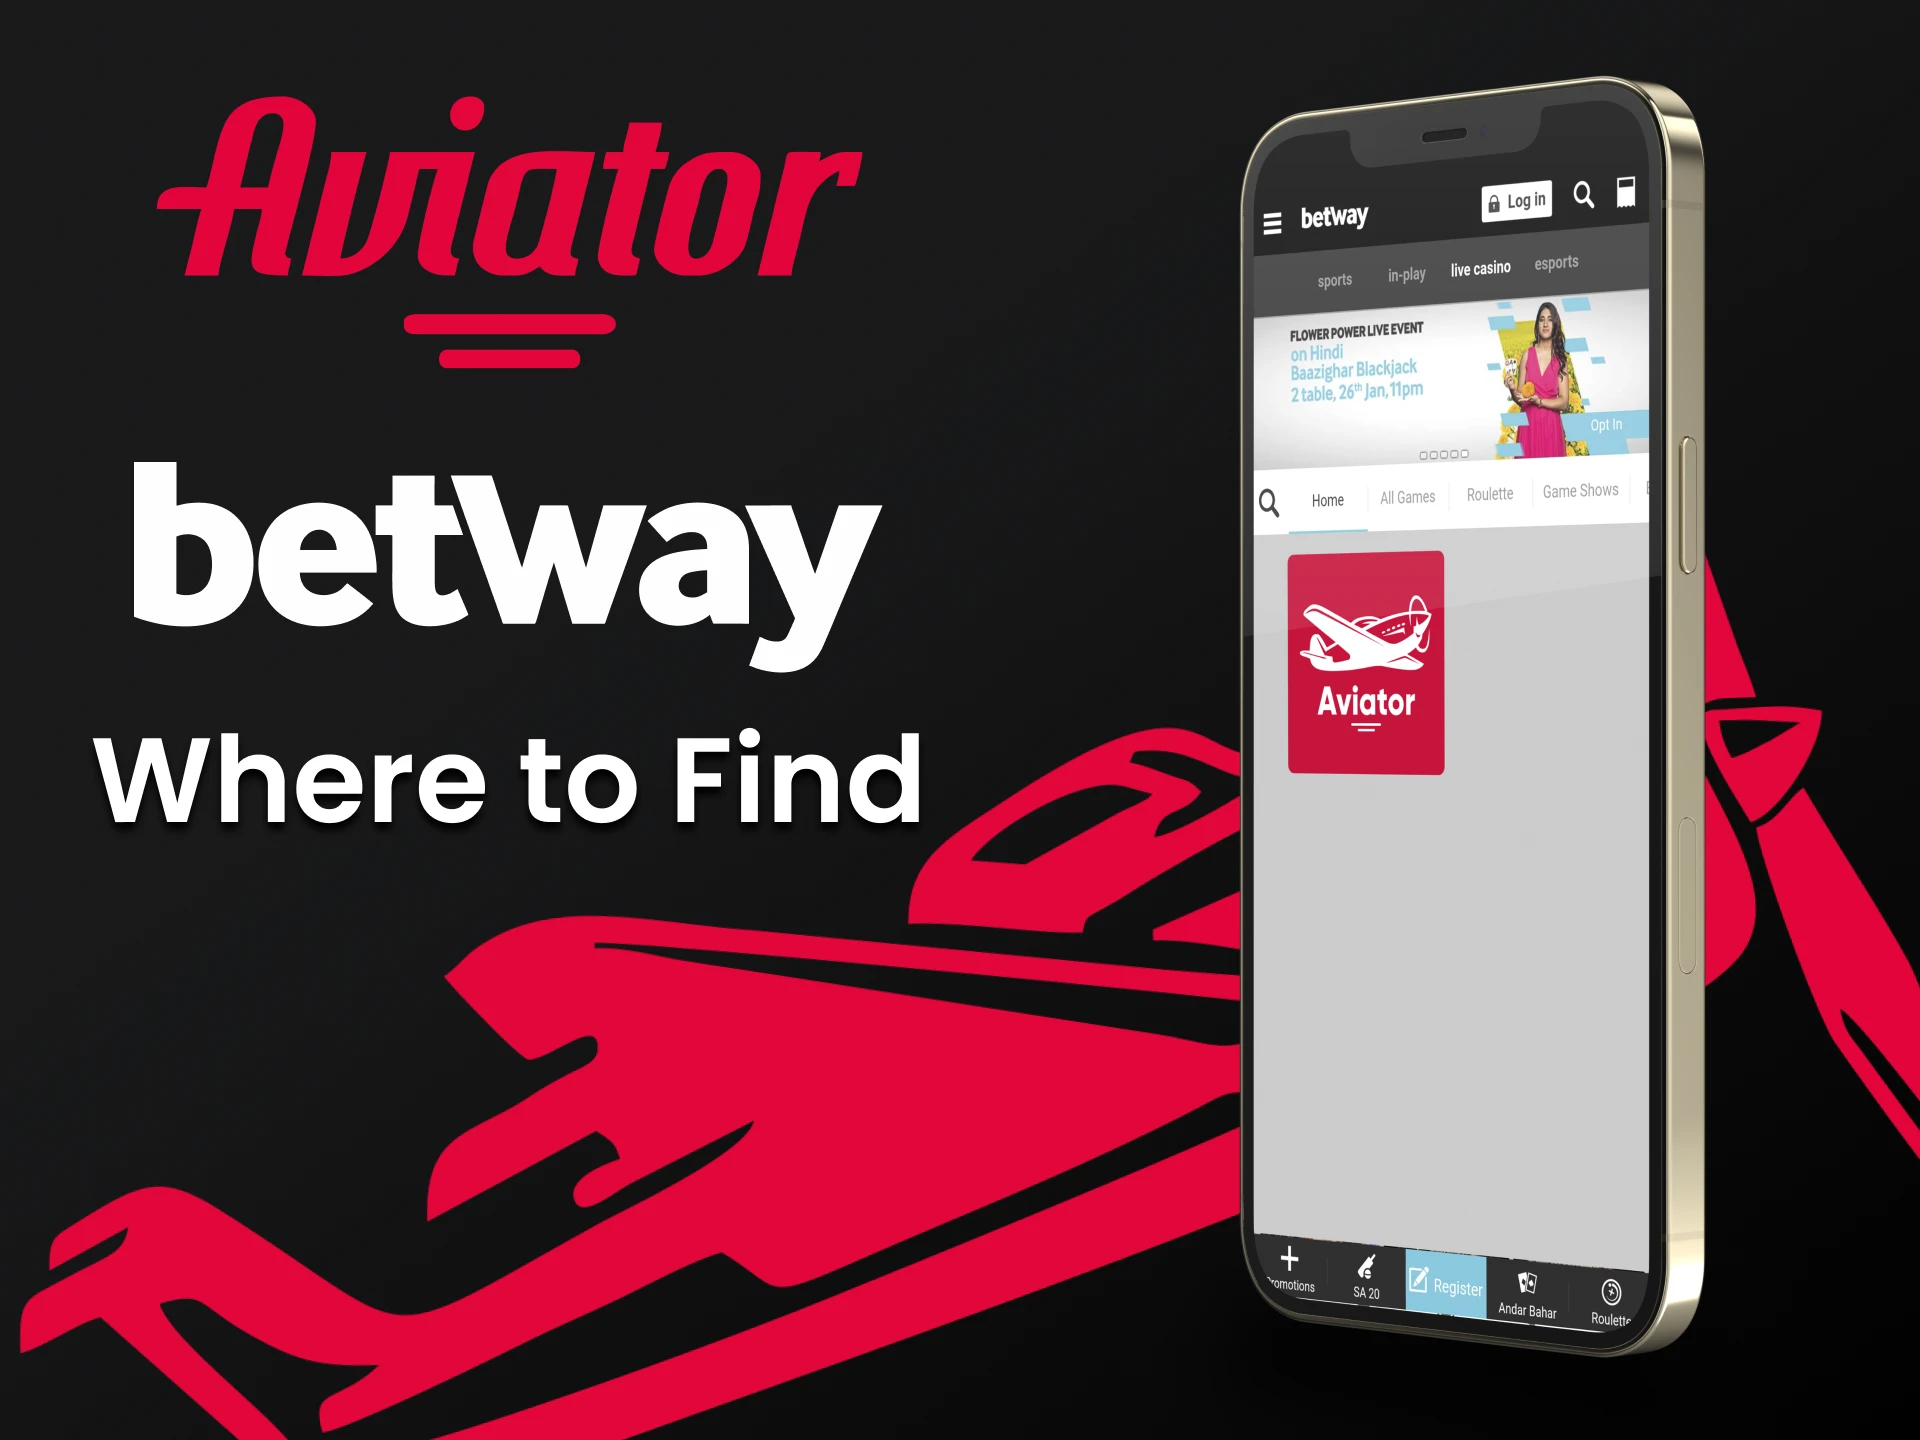 Vá para o aplicativo Betway e encontre o Aviator.